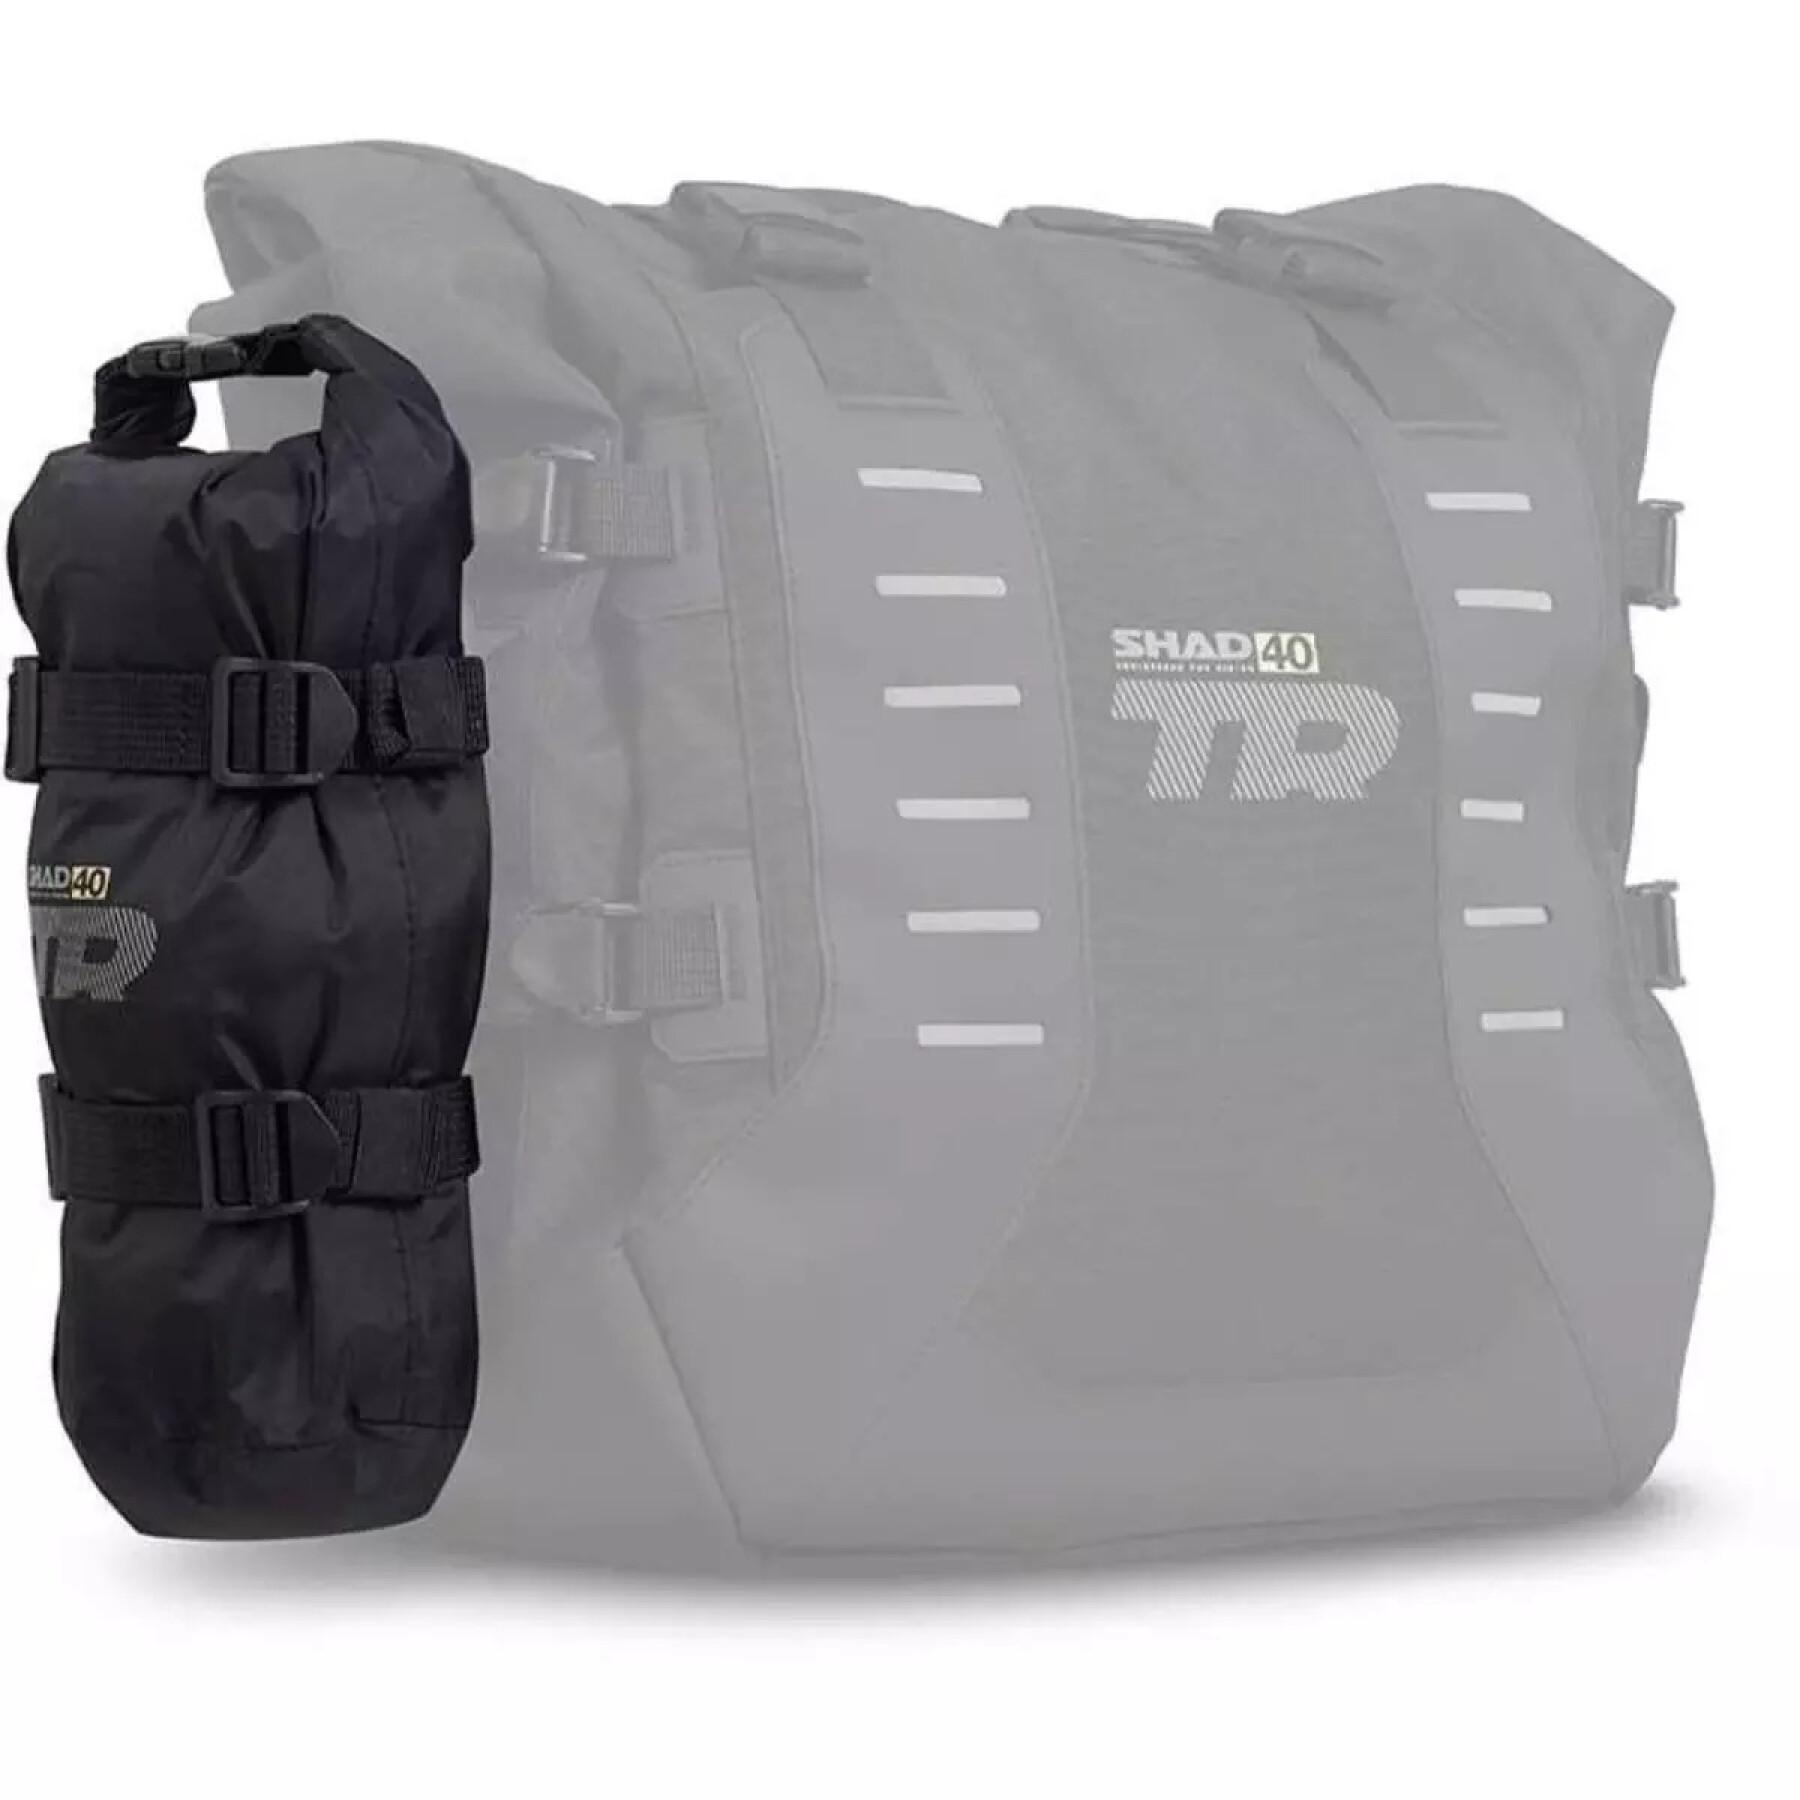 Vattentät sidoväska för motorcykel Shad Tr40